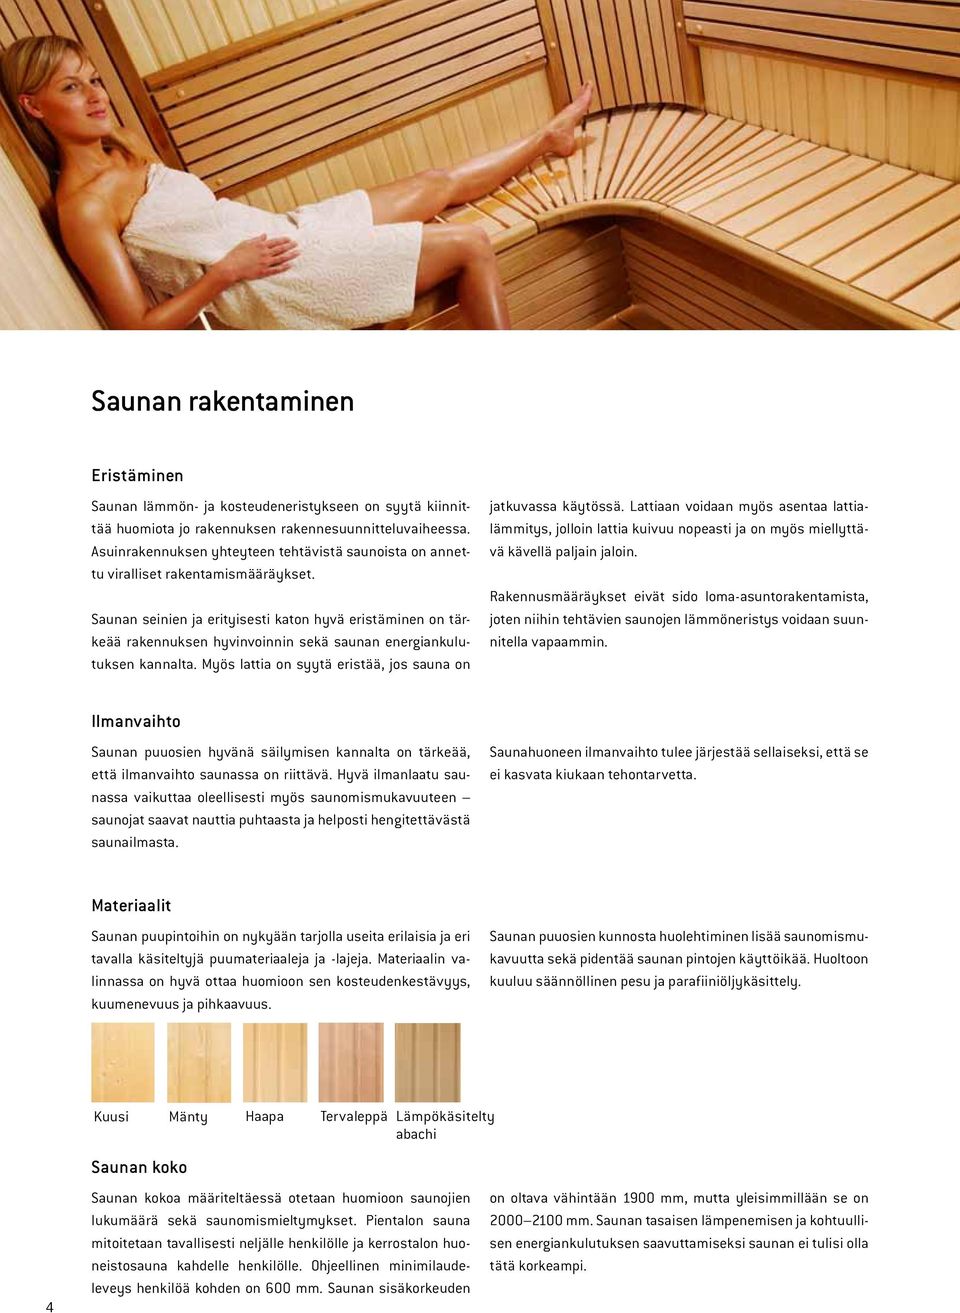 Saunan seinien ja erityisesti katon hyvä eristäminen on tärkeää rakennuksen hyvinvoinnin sekä saunan energiankulutuksen kannalta. Myös lattia on syytä eristää, jos sauna on jatkuvassa käytössä.